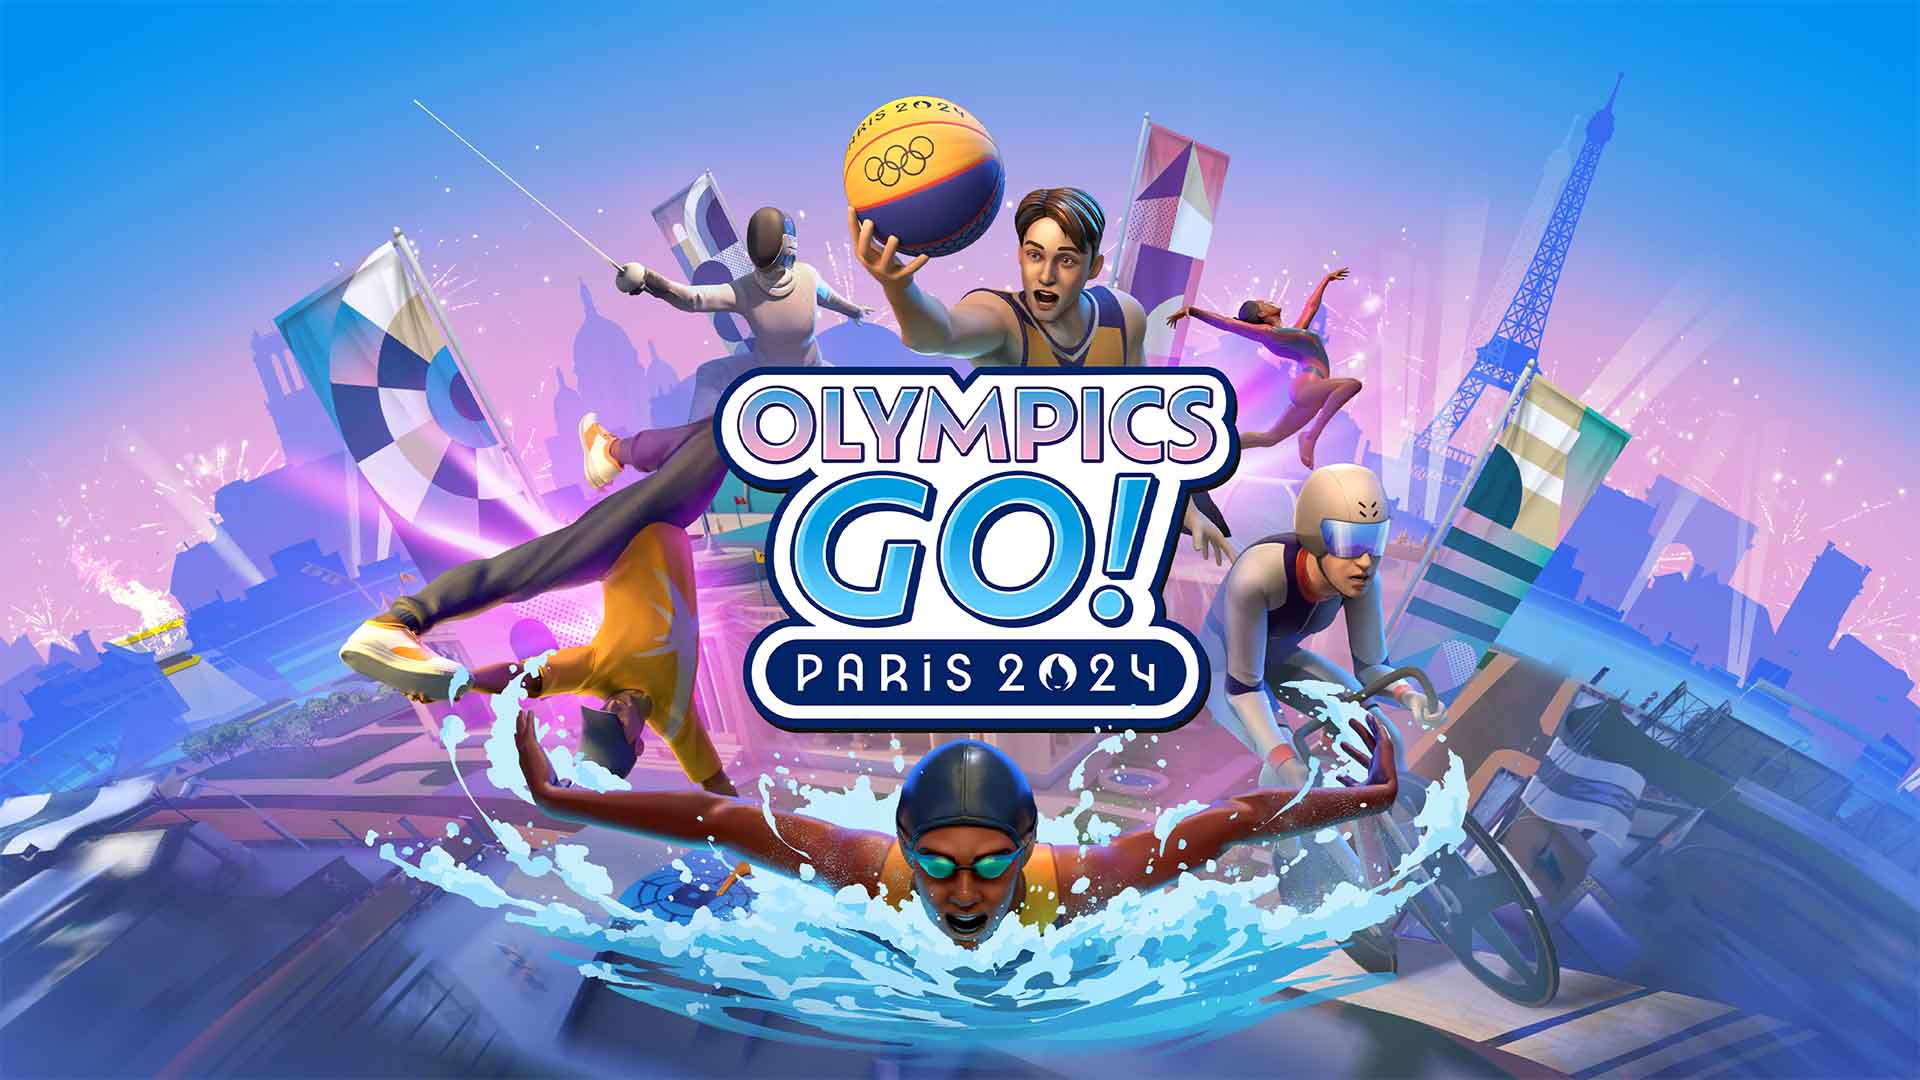 Olympics Go! Paris 2024 – Joc oficial pentru Jocurile Olimpice Paris 2024